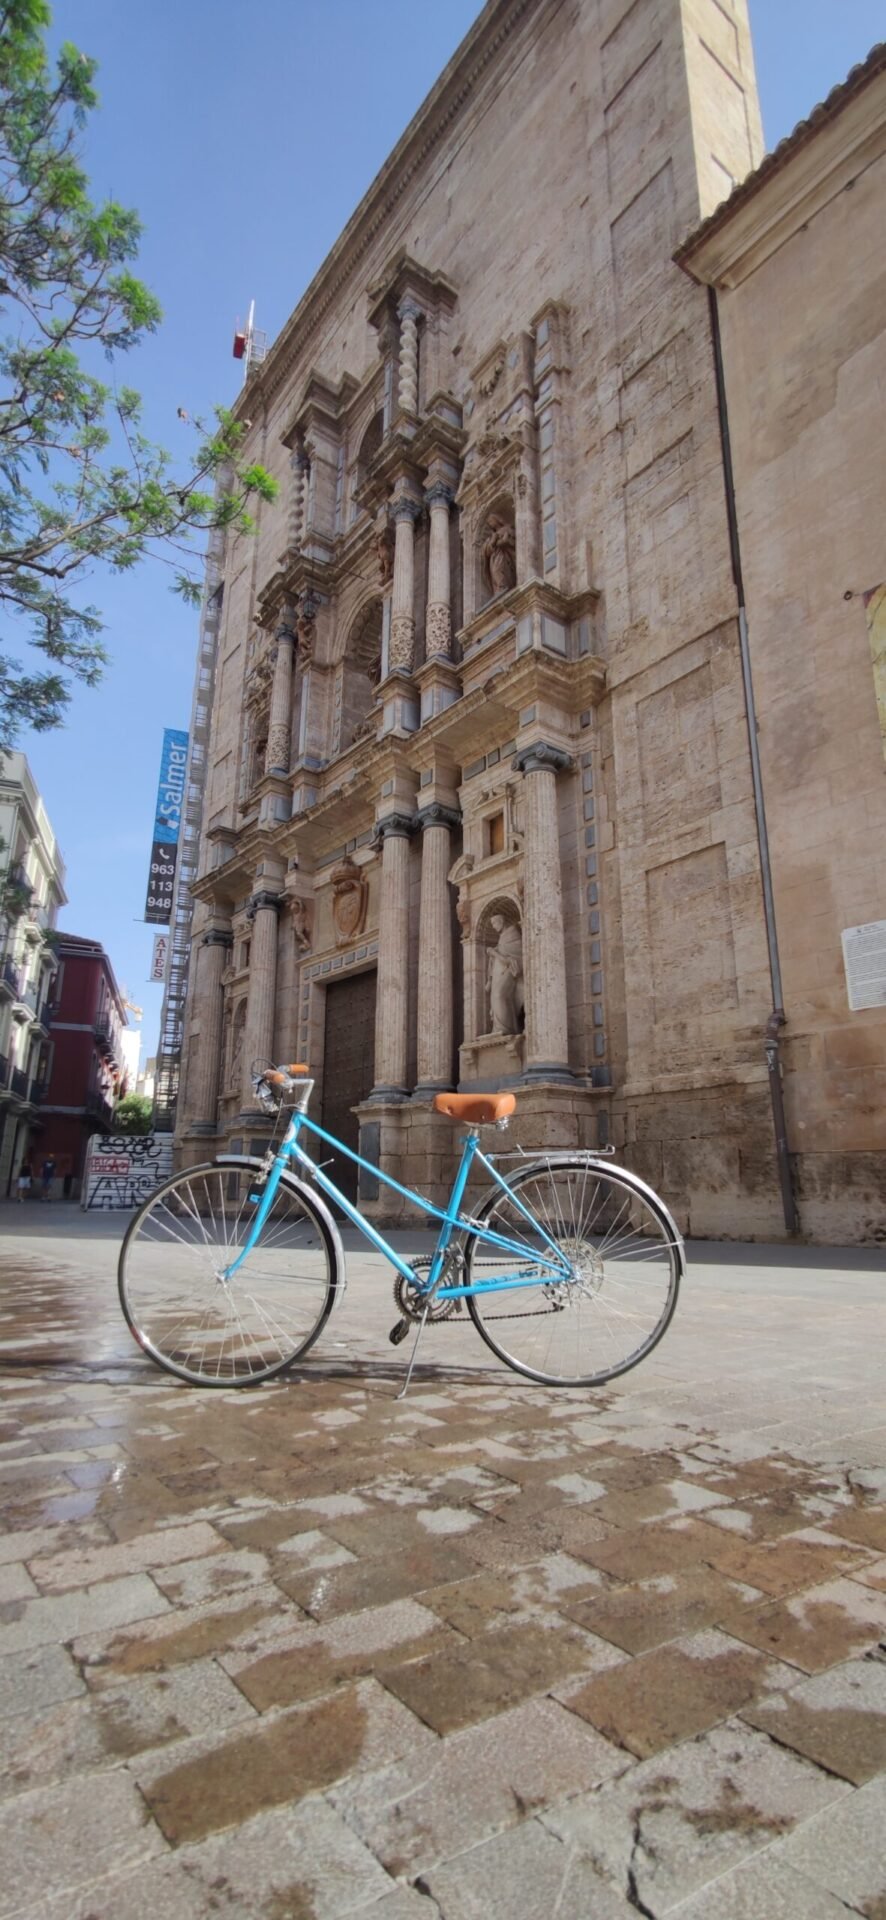 La creciente popularidad de la bicicleta como medio de transporte en las ciudades y su impacto en la reducción del tráfico urbano y la contaminación.